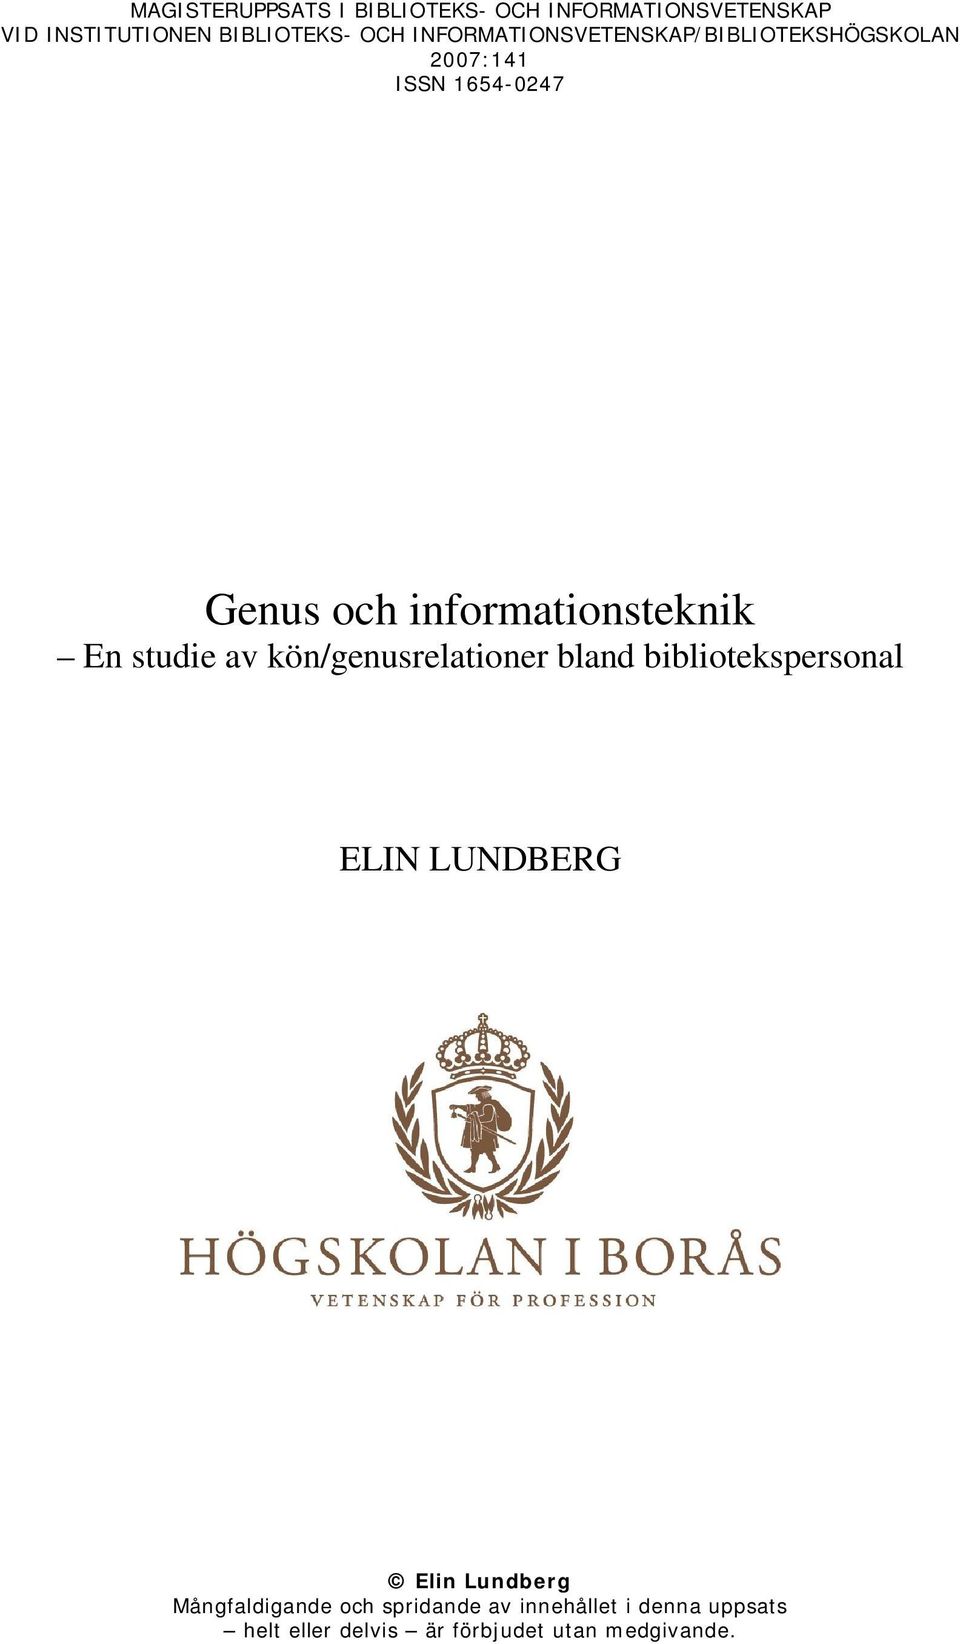 En studie av kön/genusrelationer bland bibliotekspersonal ELIN LUNDBERG Elin Lundberg